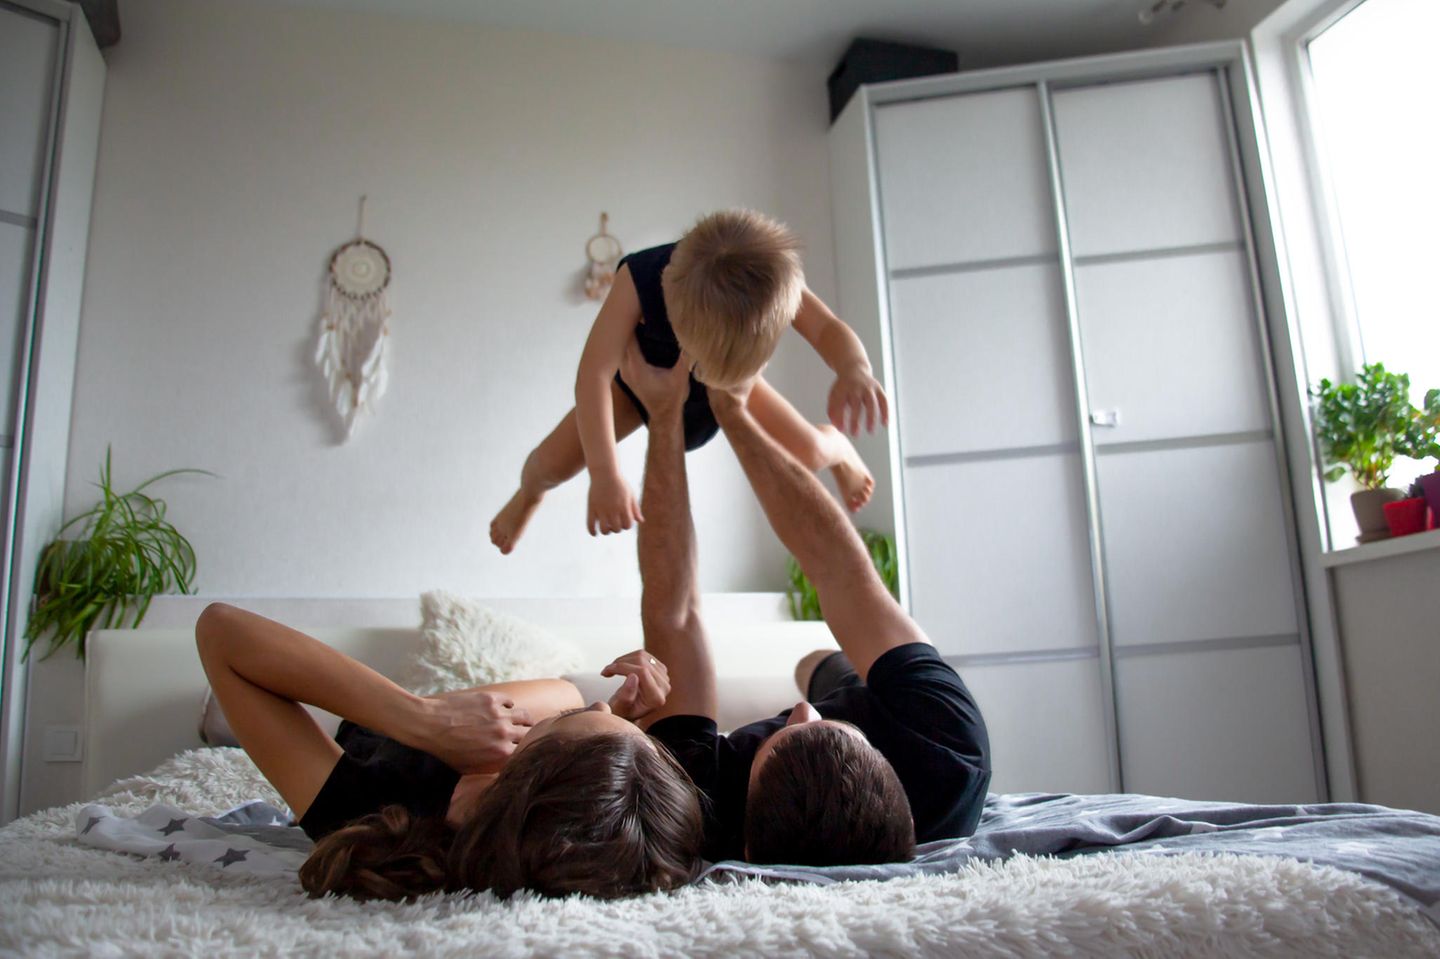 Väter-Fitness im Babyalltag: Vater spielt Flieger mit Kind